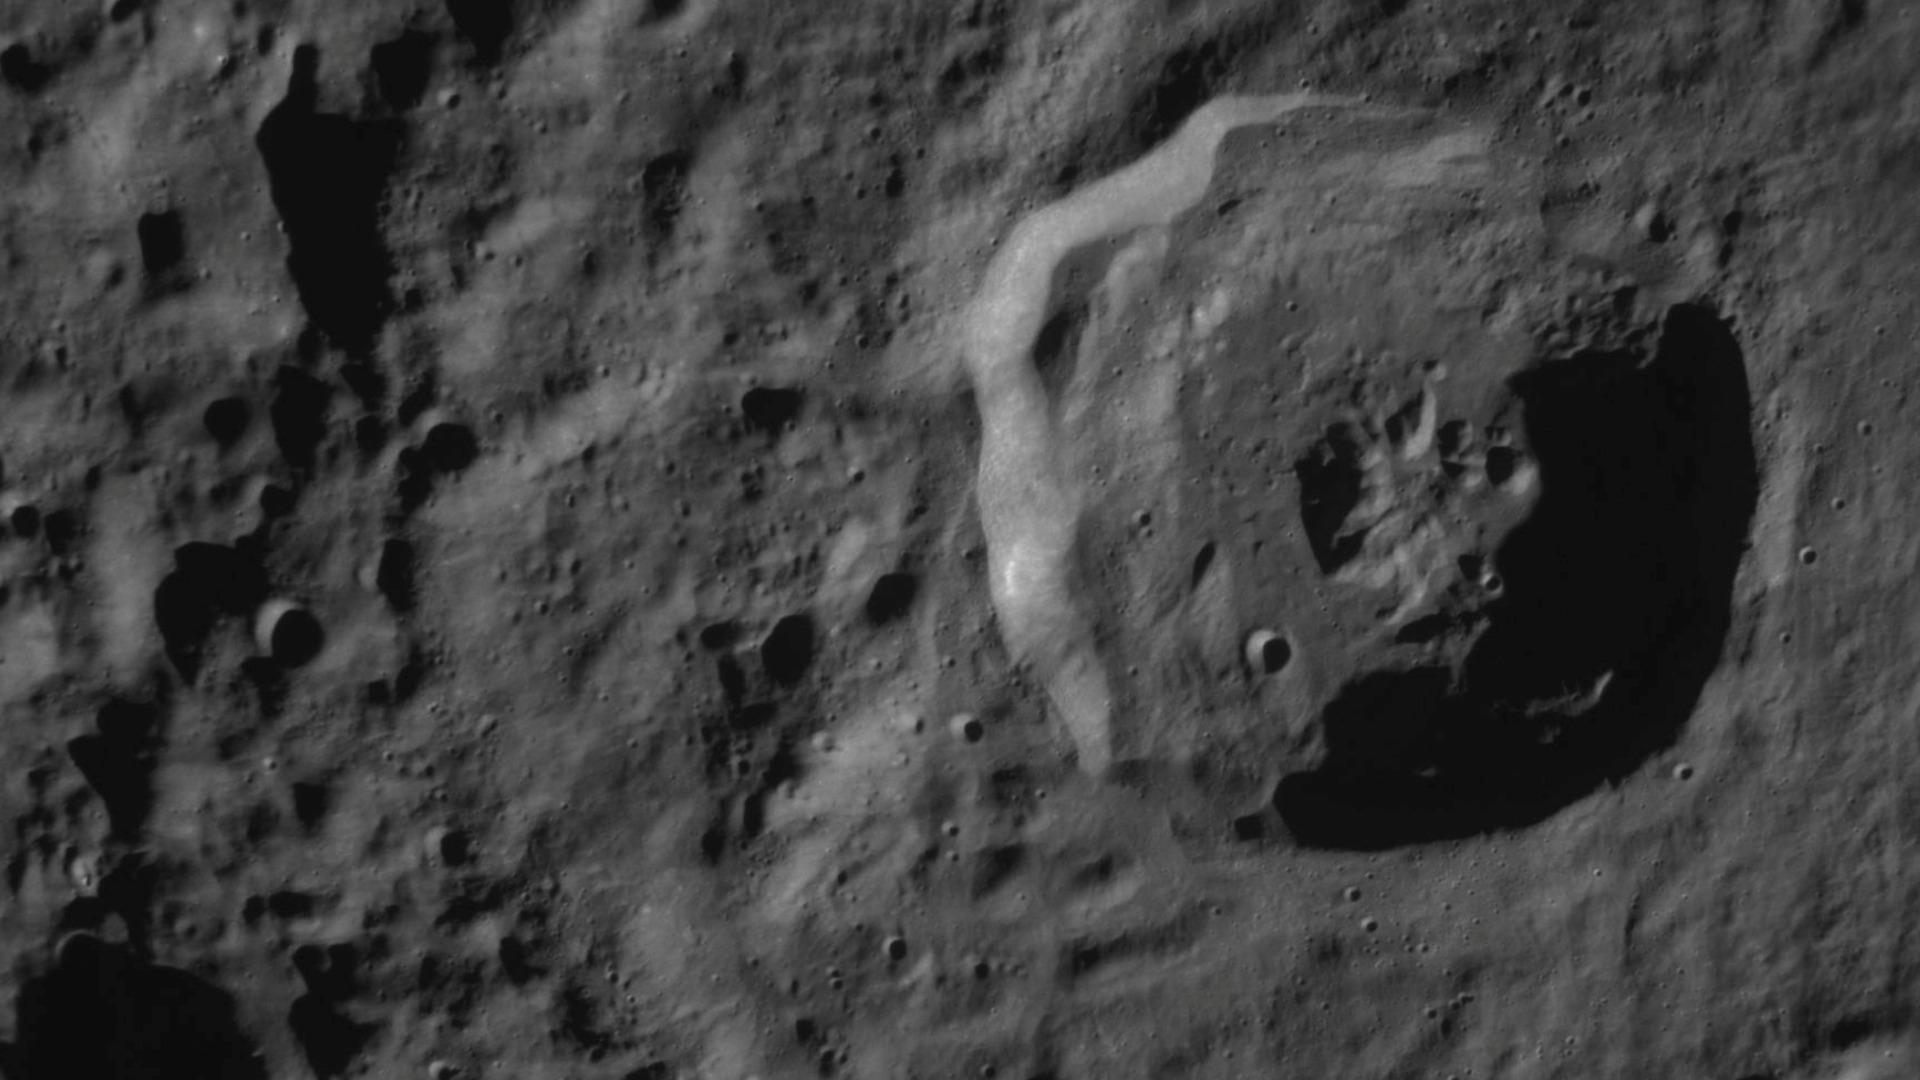 Odiseo Capta Espectacular Foto de la Luna Horas Antes de Alunizar